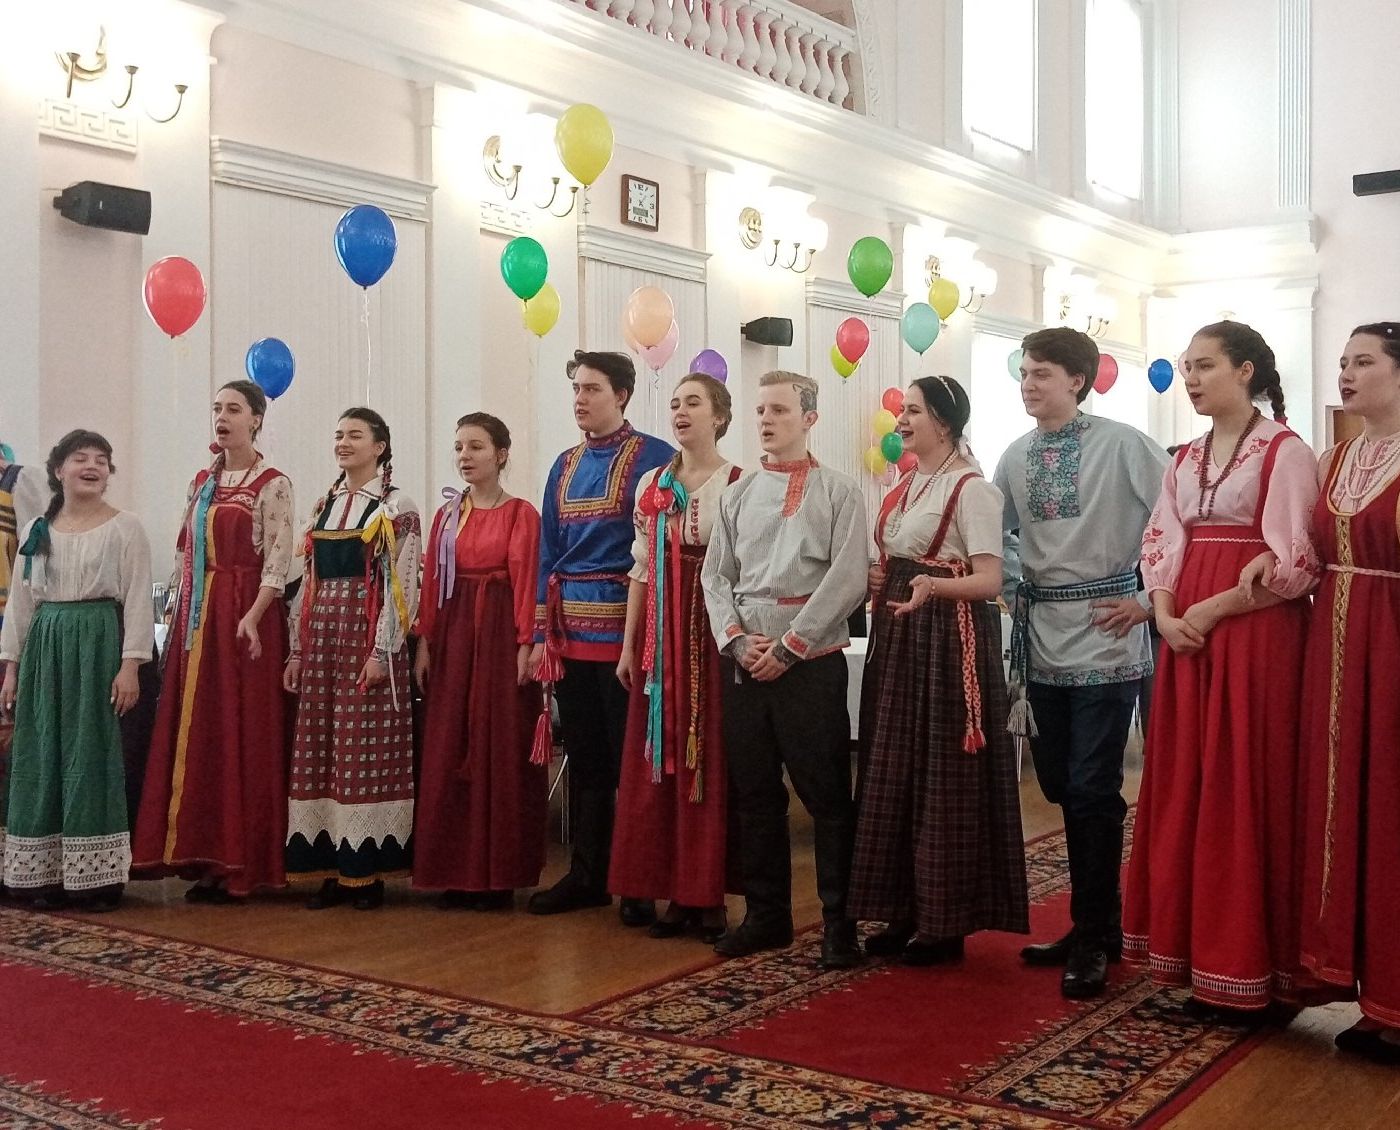 С Днём народного единства поздравляет псковичей колледж искусств #искусствообъединяет #мывместе